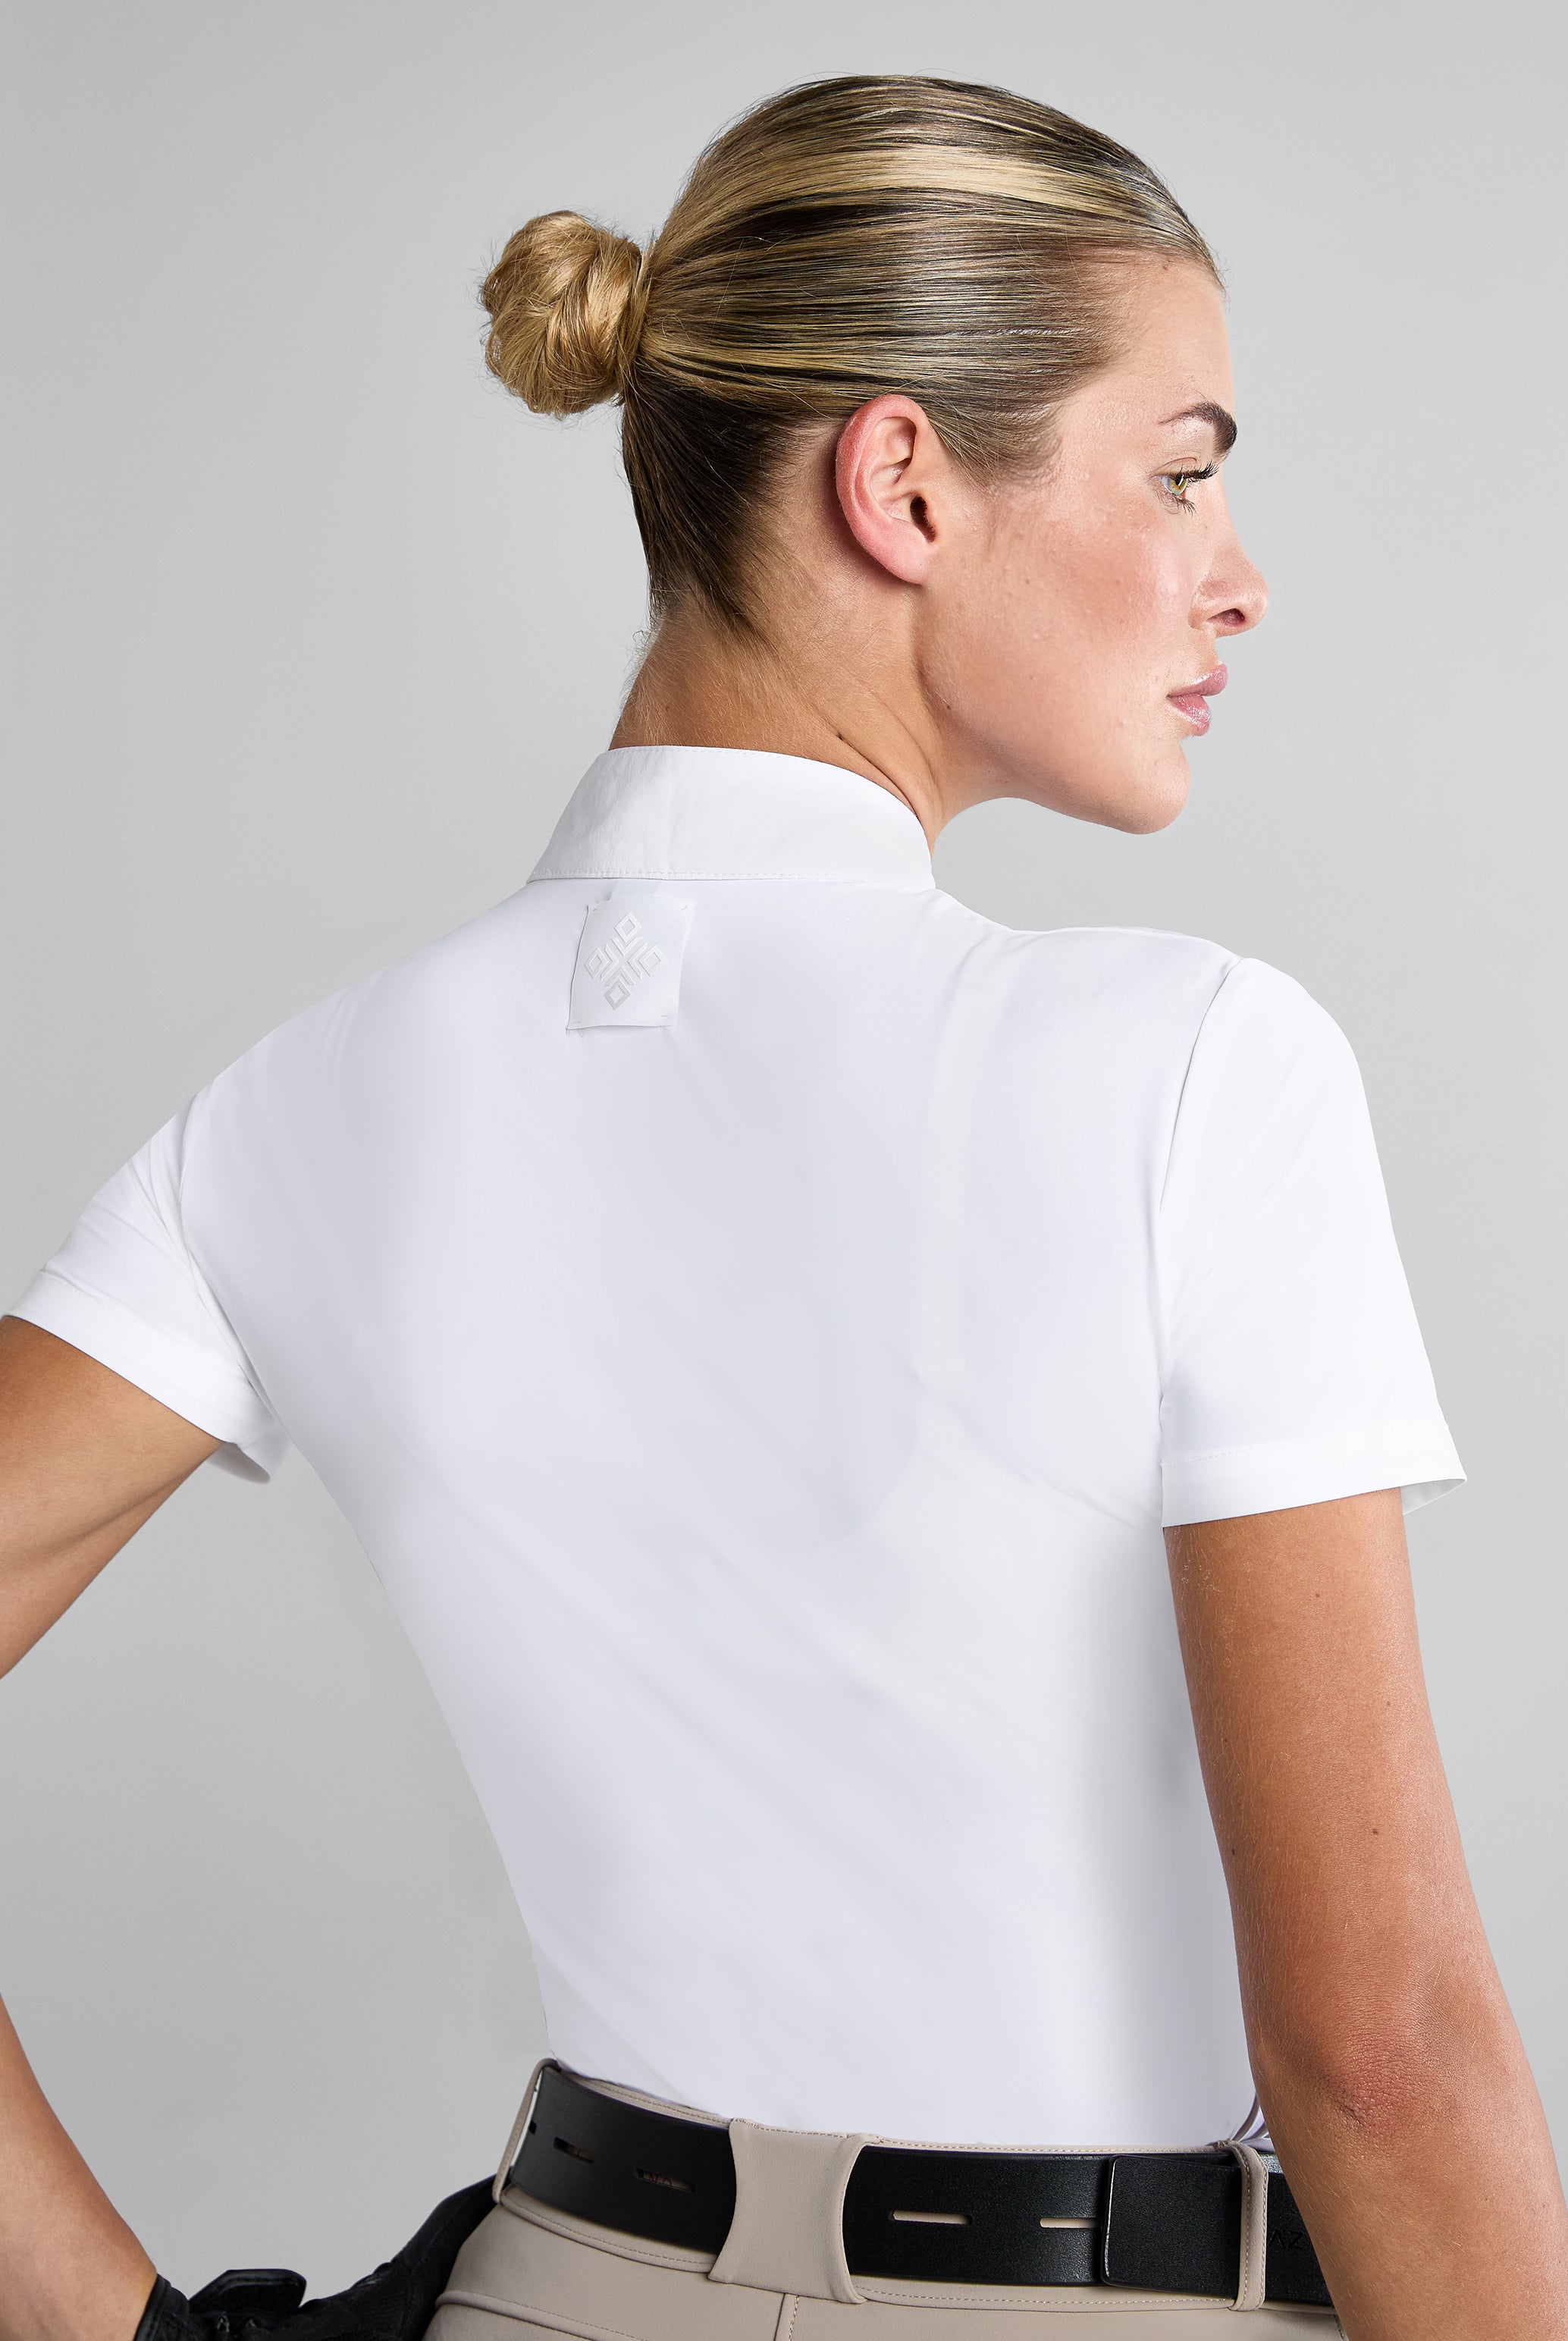 White Premium Lightweight Short Sleeve Shirt